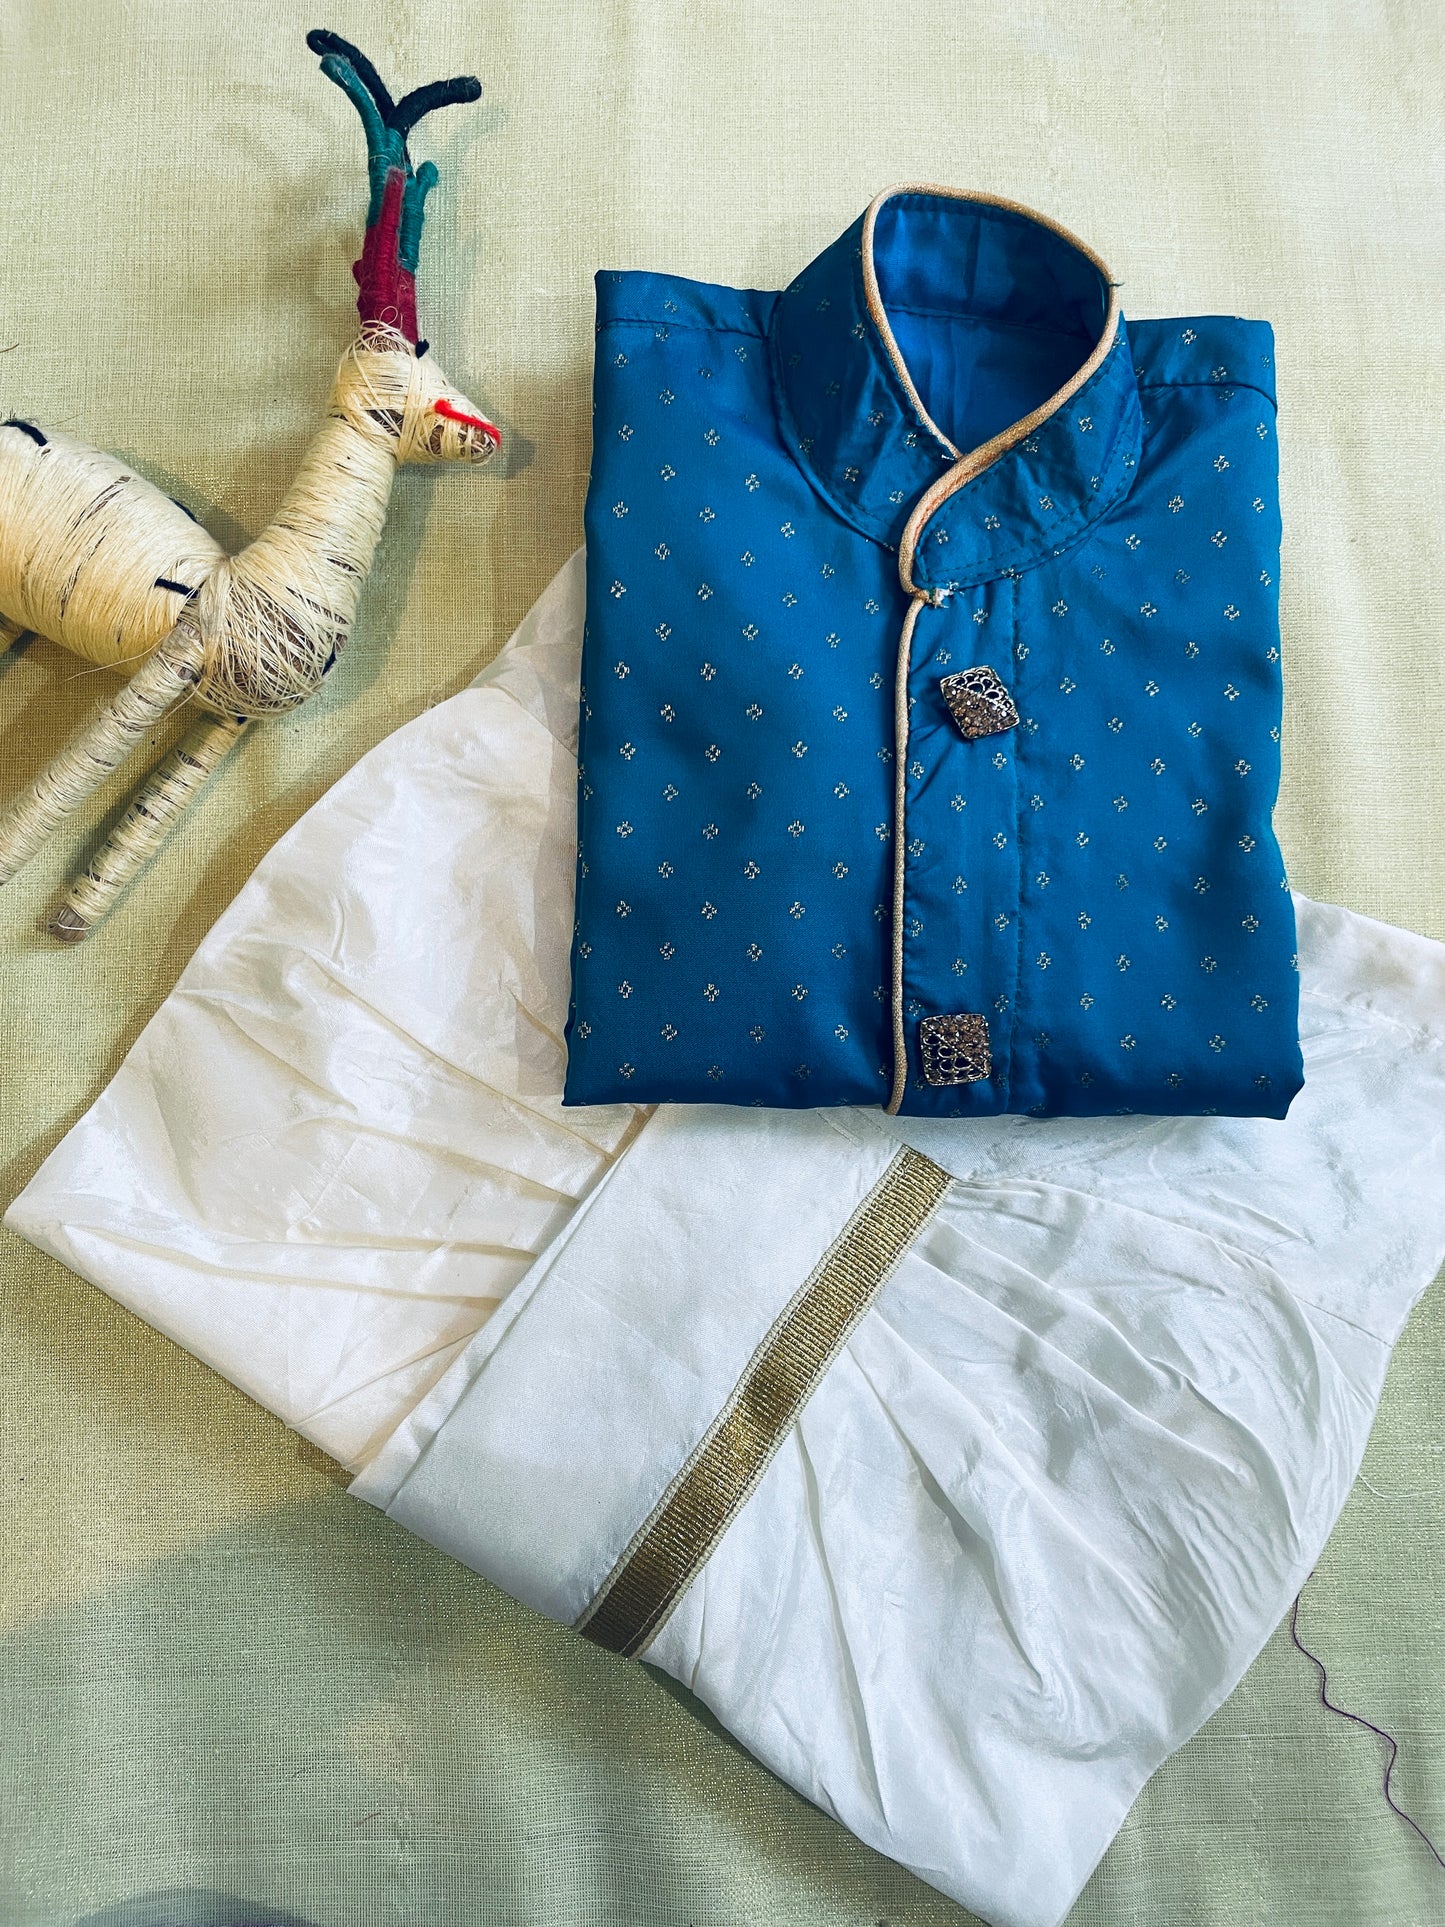 Kanchi look-alike and Panche kattu silk kurta dhoti ethnic wear for baby boy